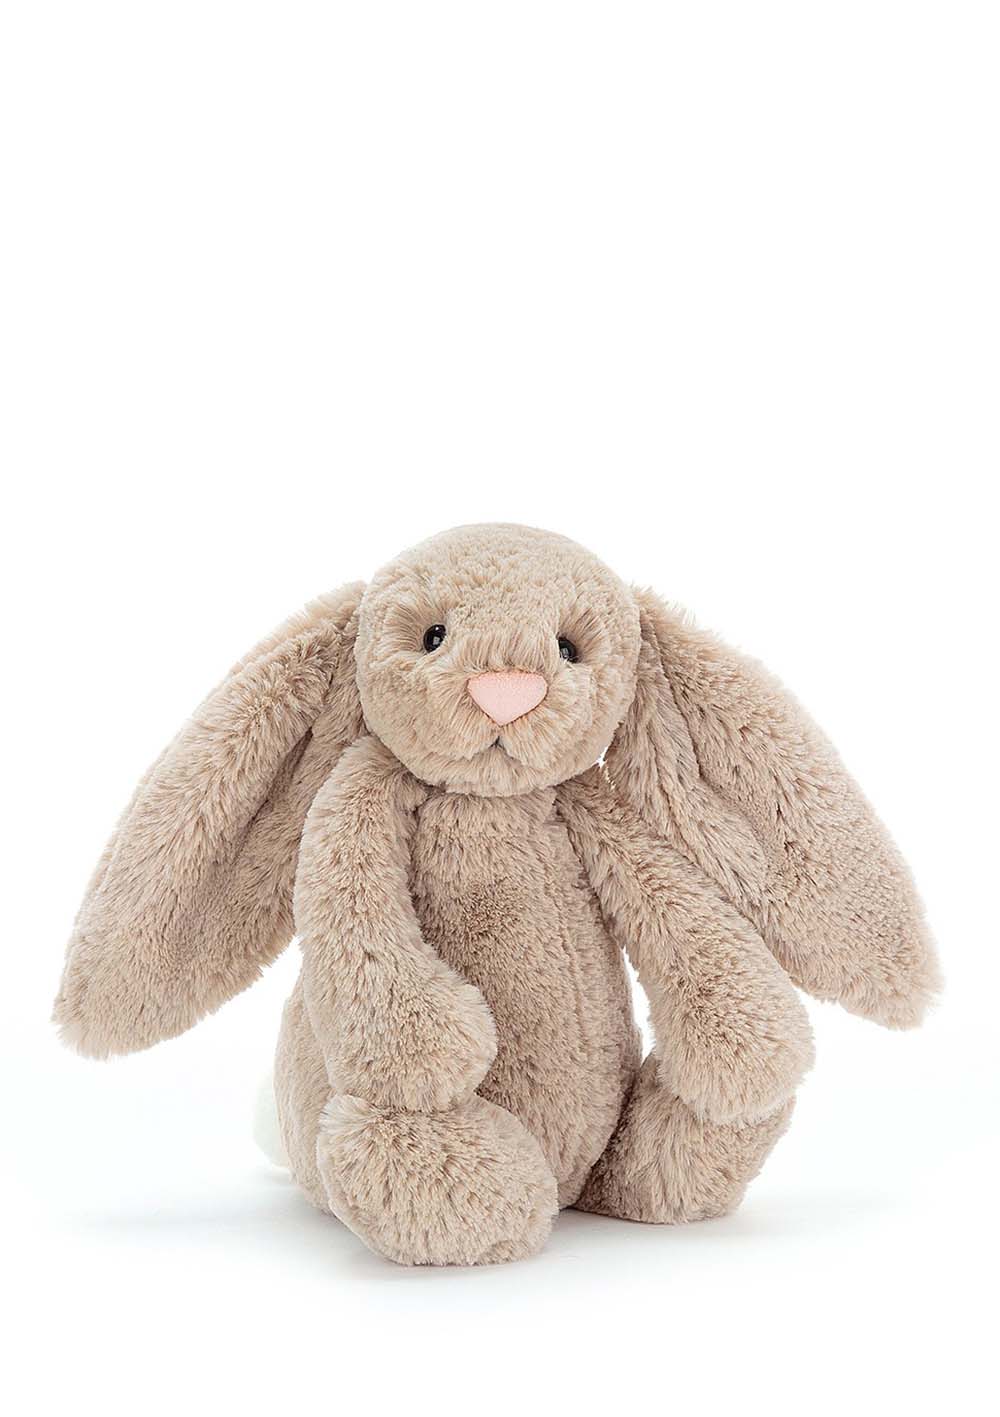 Hase Kuscheltier 'Bashful Bunny' medium